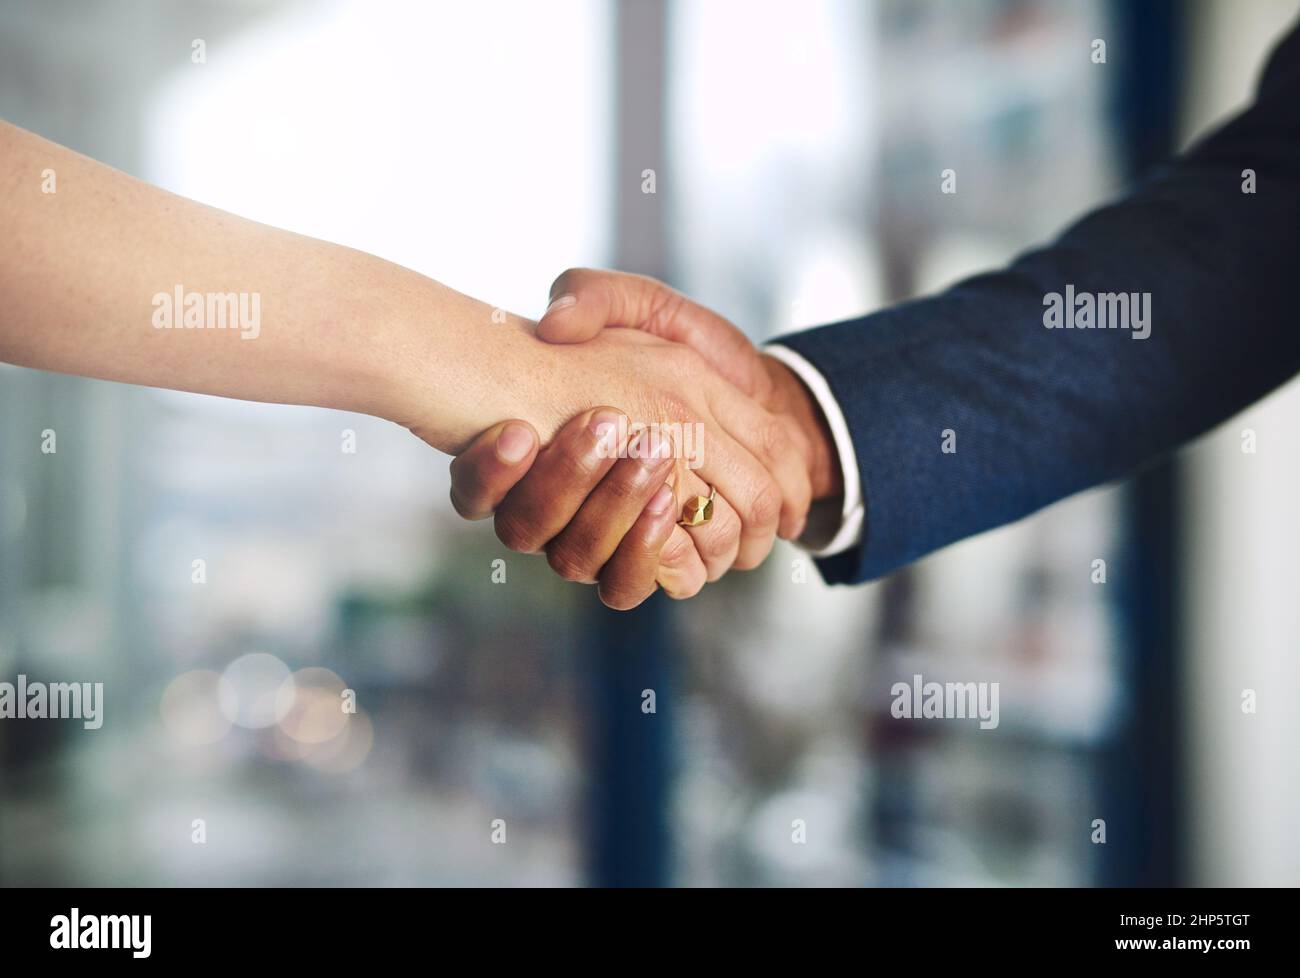 Renforcer l'entreprise grâce à une alliance solide. Photo courte d'un homme d'affaires et d'une femme d'affaires qui se secouent la main au travail. Banque D'Images